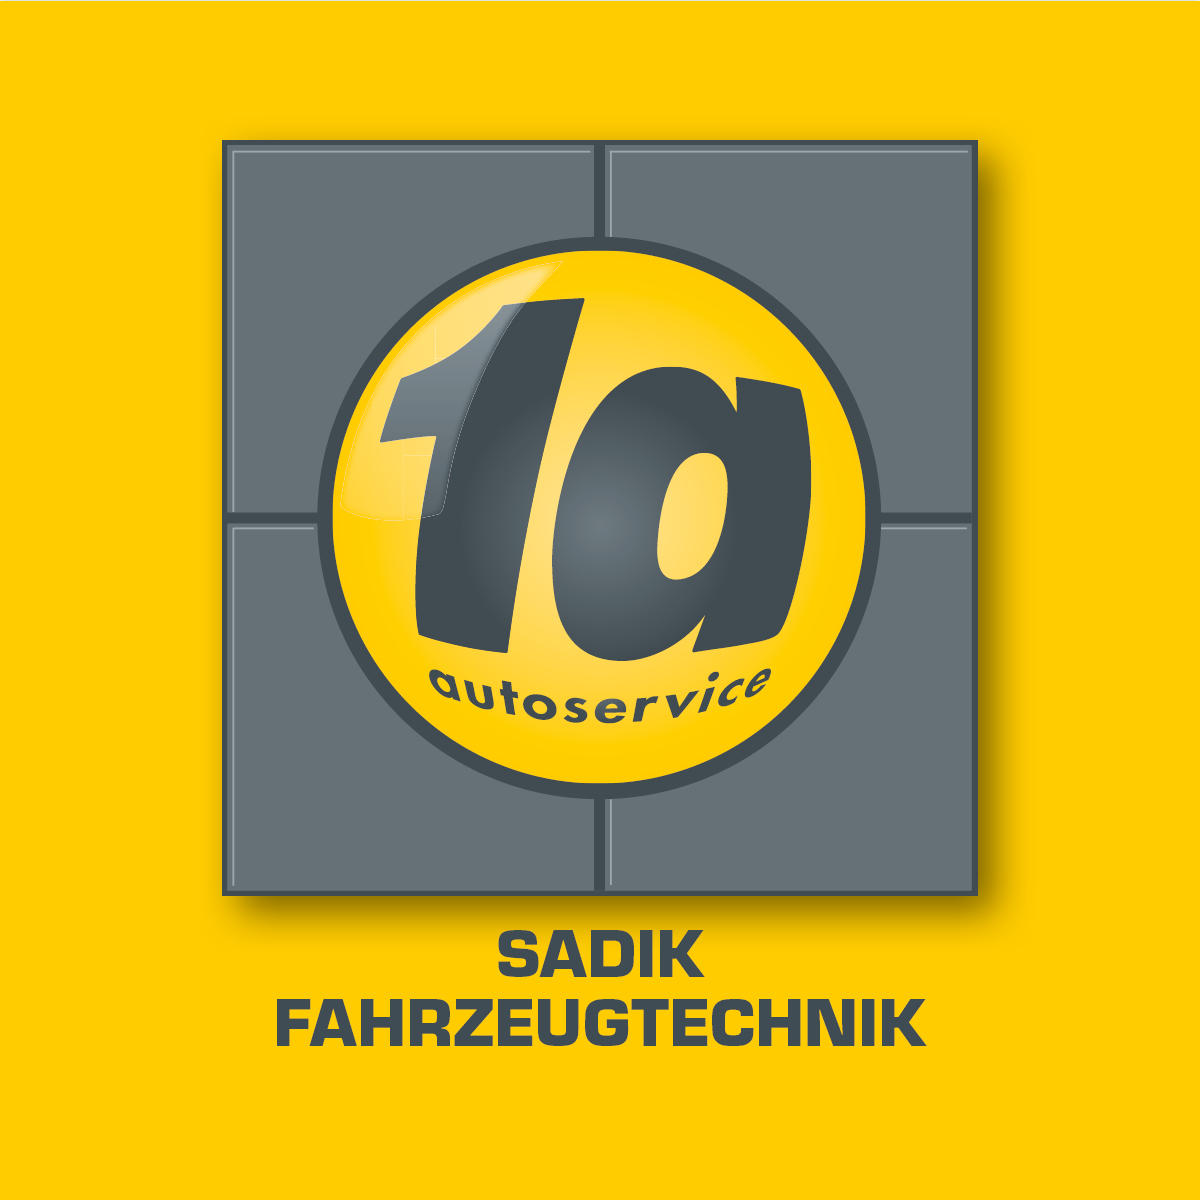 Sadik Fahrzeugtechnik in Schwelm - Logo